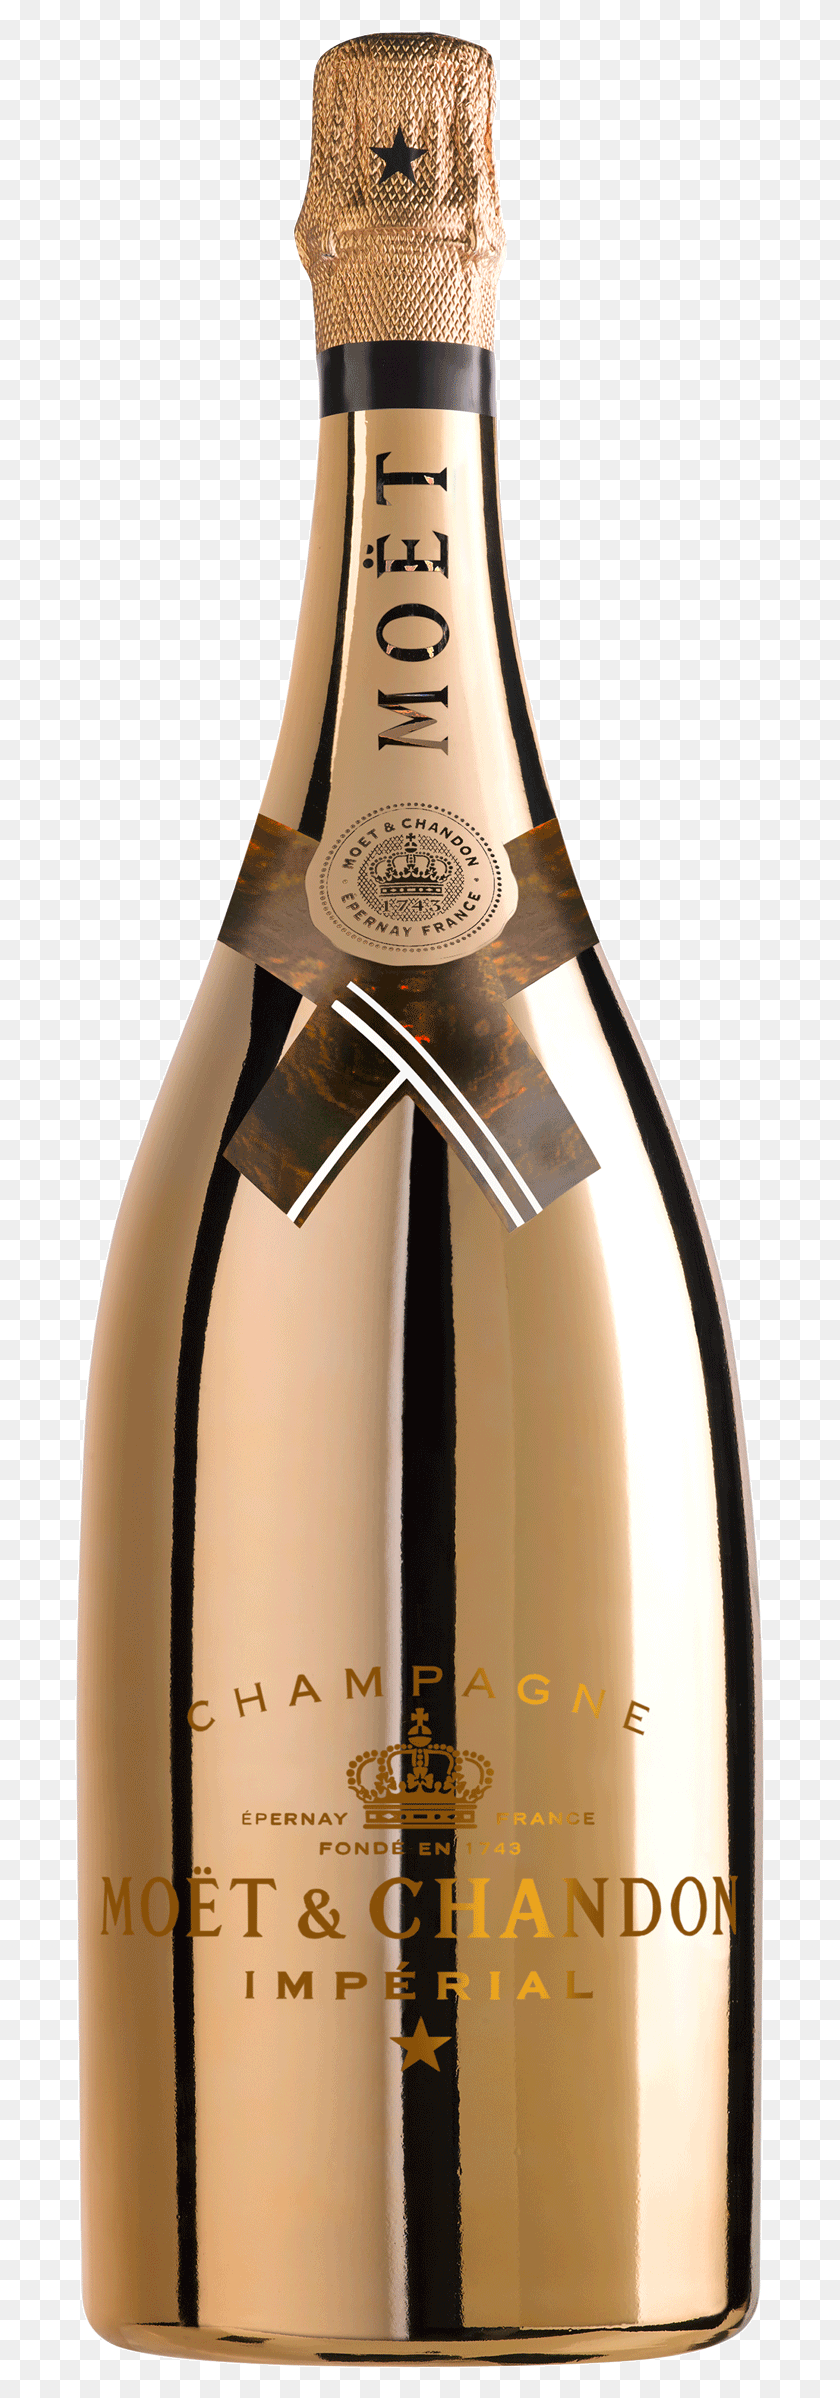 691x2338 Золотая Бутылка Шампанского Moet Chandon Imperial 2018 Яркая Ночь, Алкоголь, Напиток, Напиток Hd Png Скачать